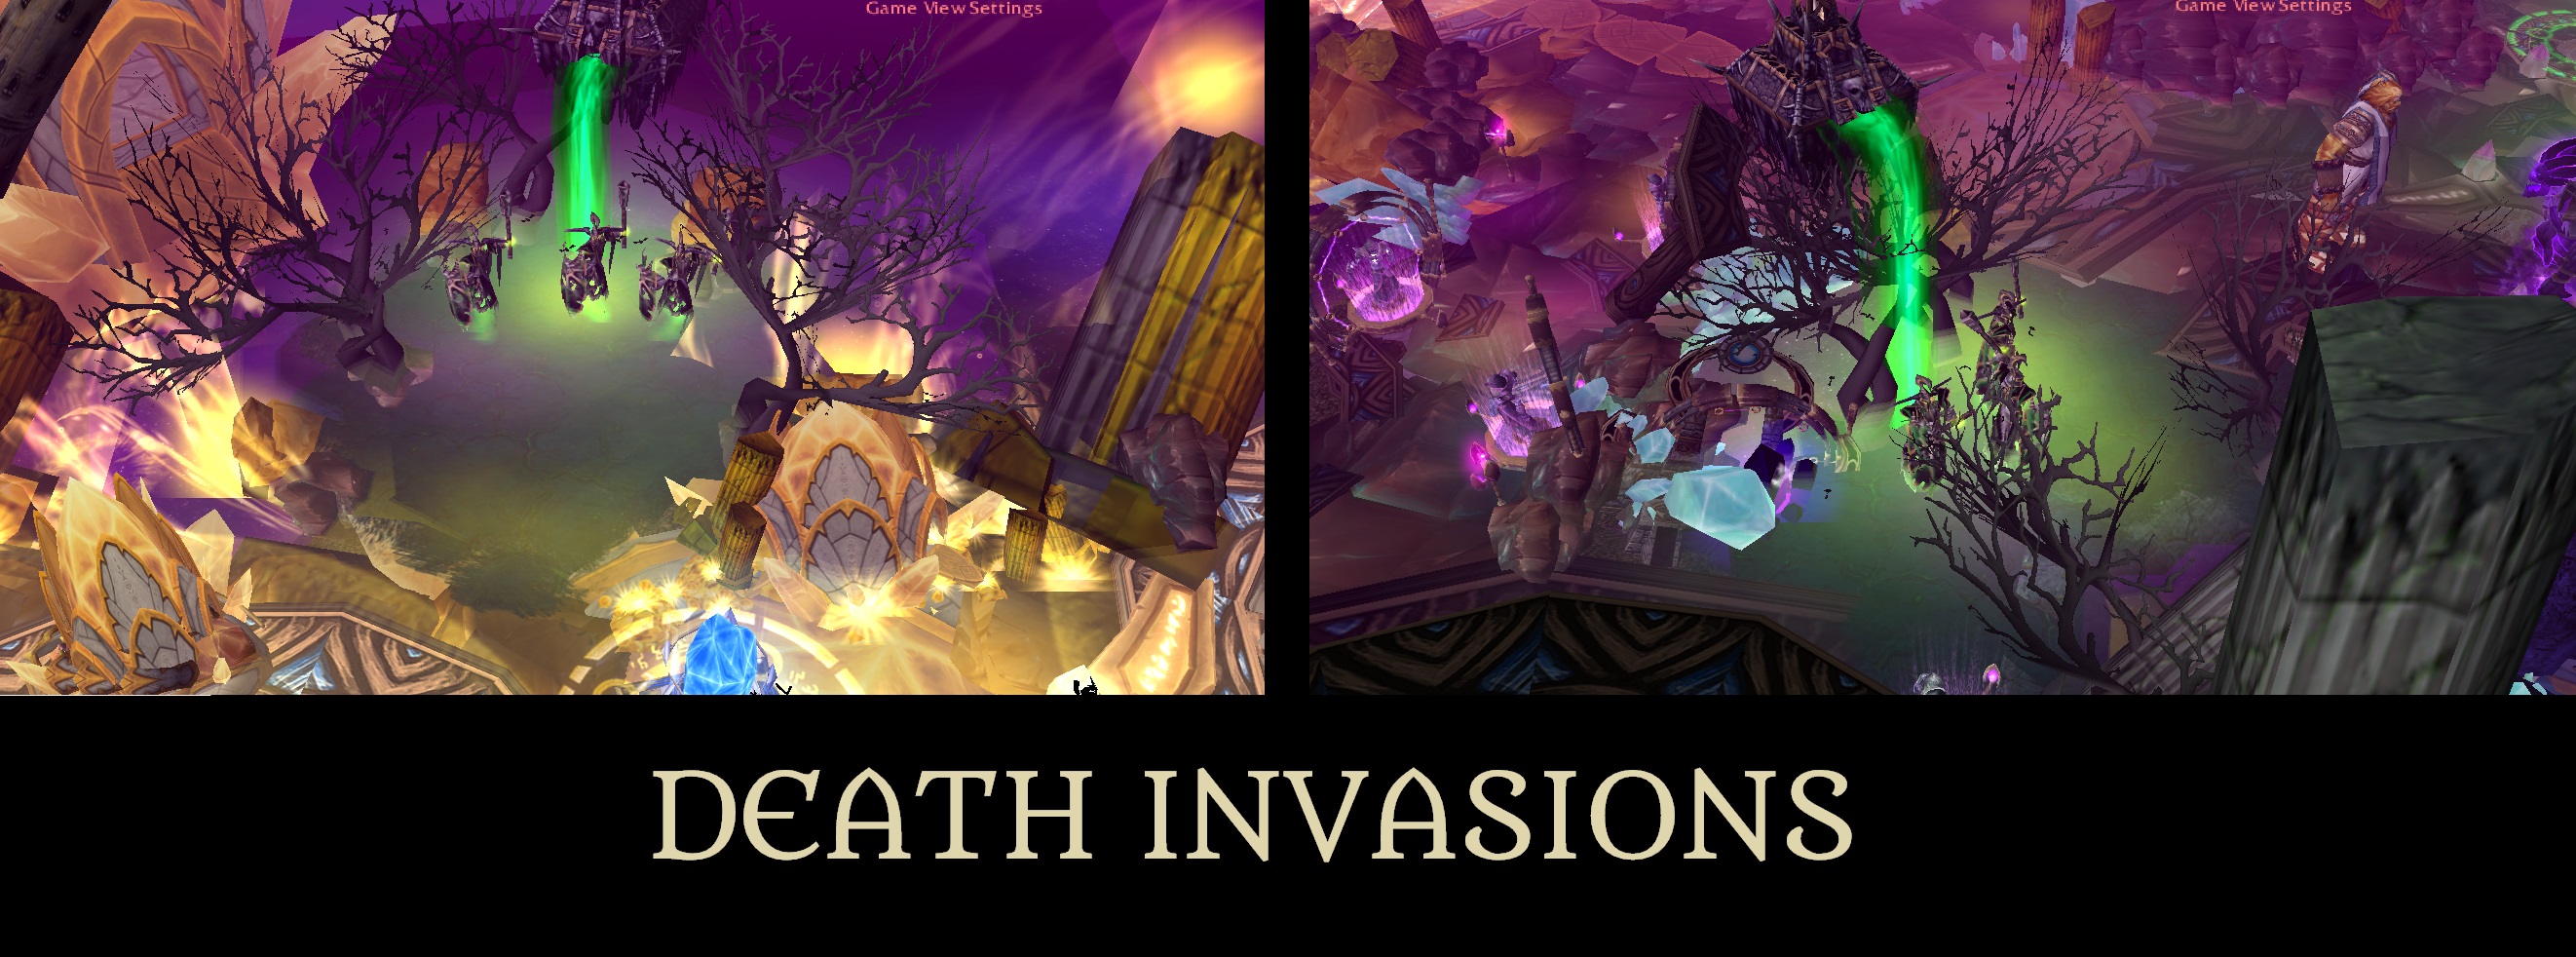 Death Invasions